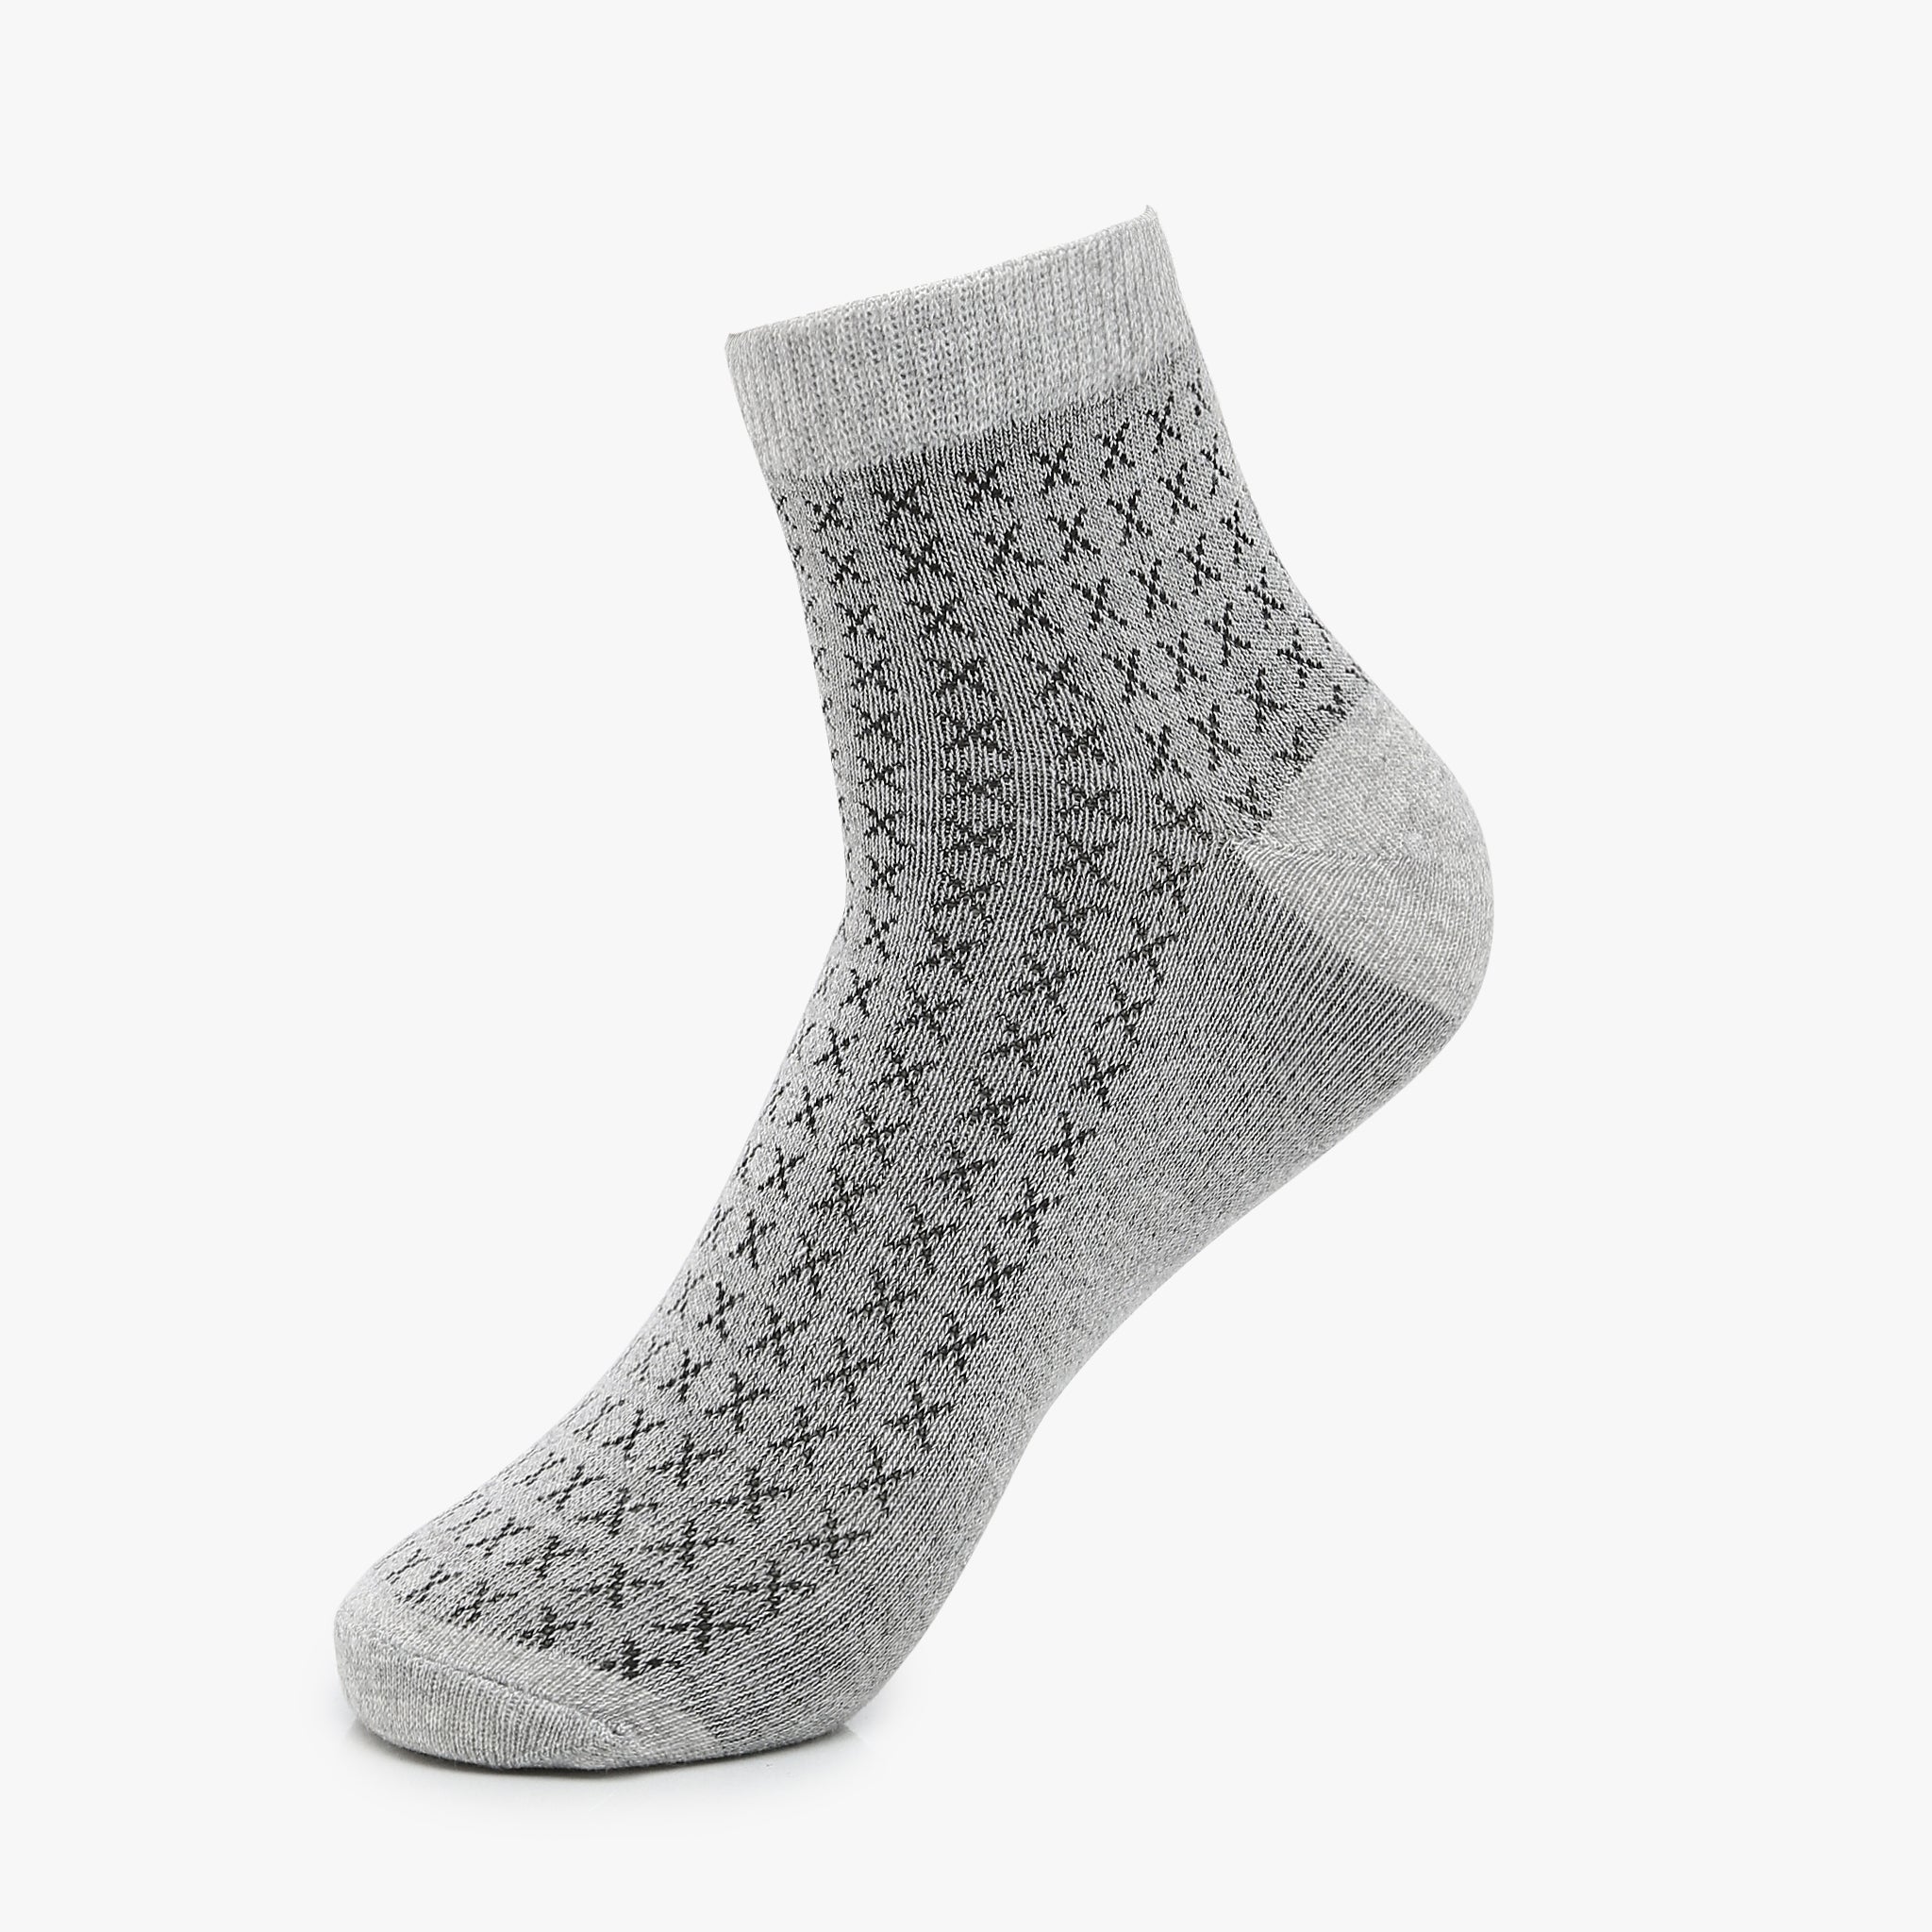 Men Wearing Assorted Free Size Socks